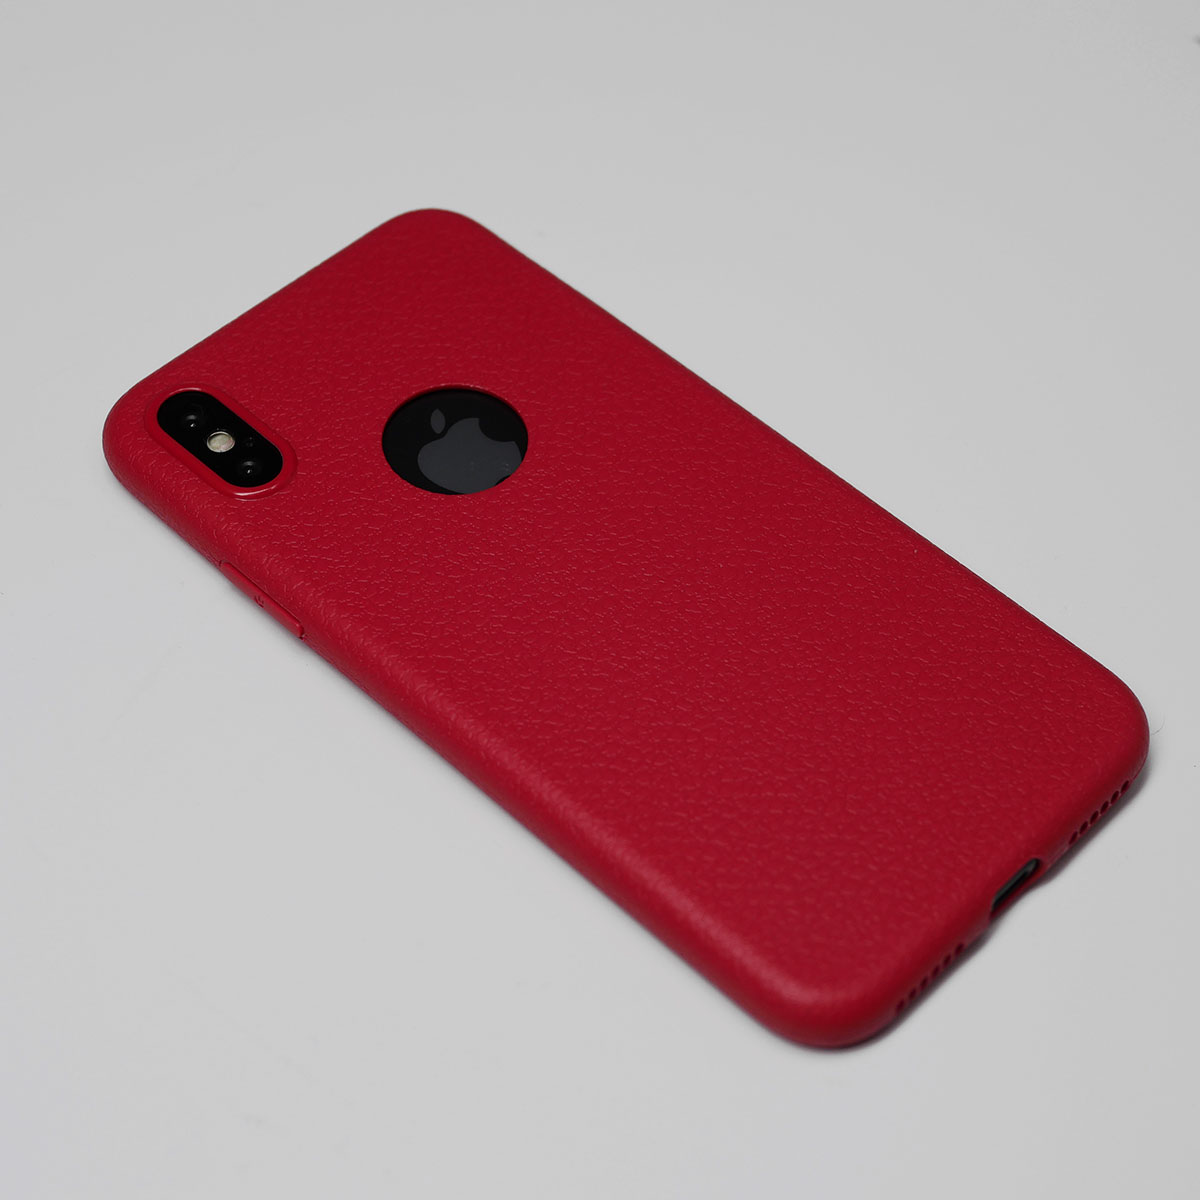 138098 เคส iPhone XS สีแดง
